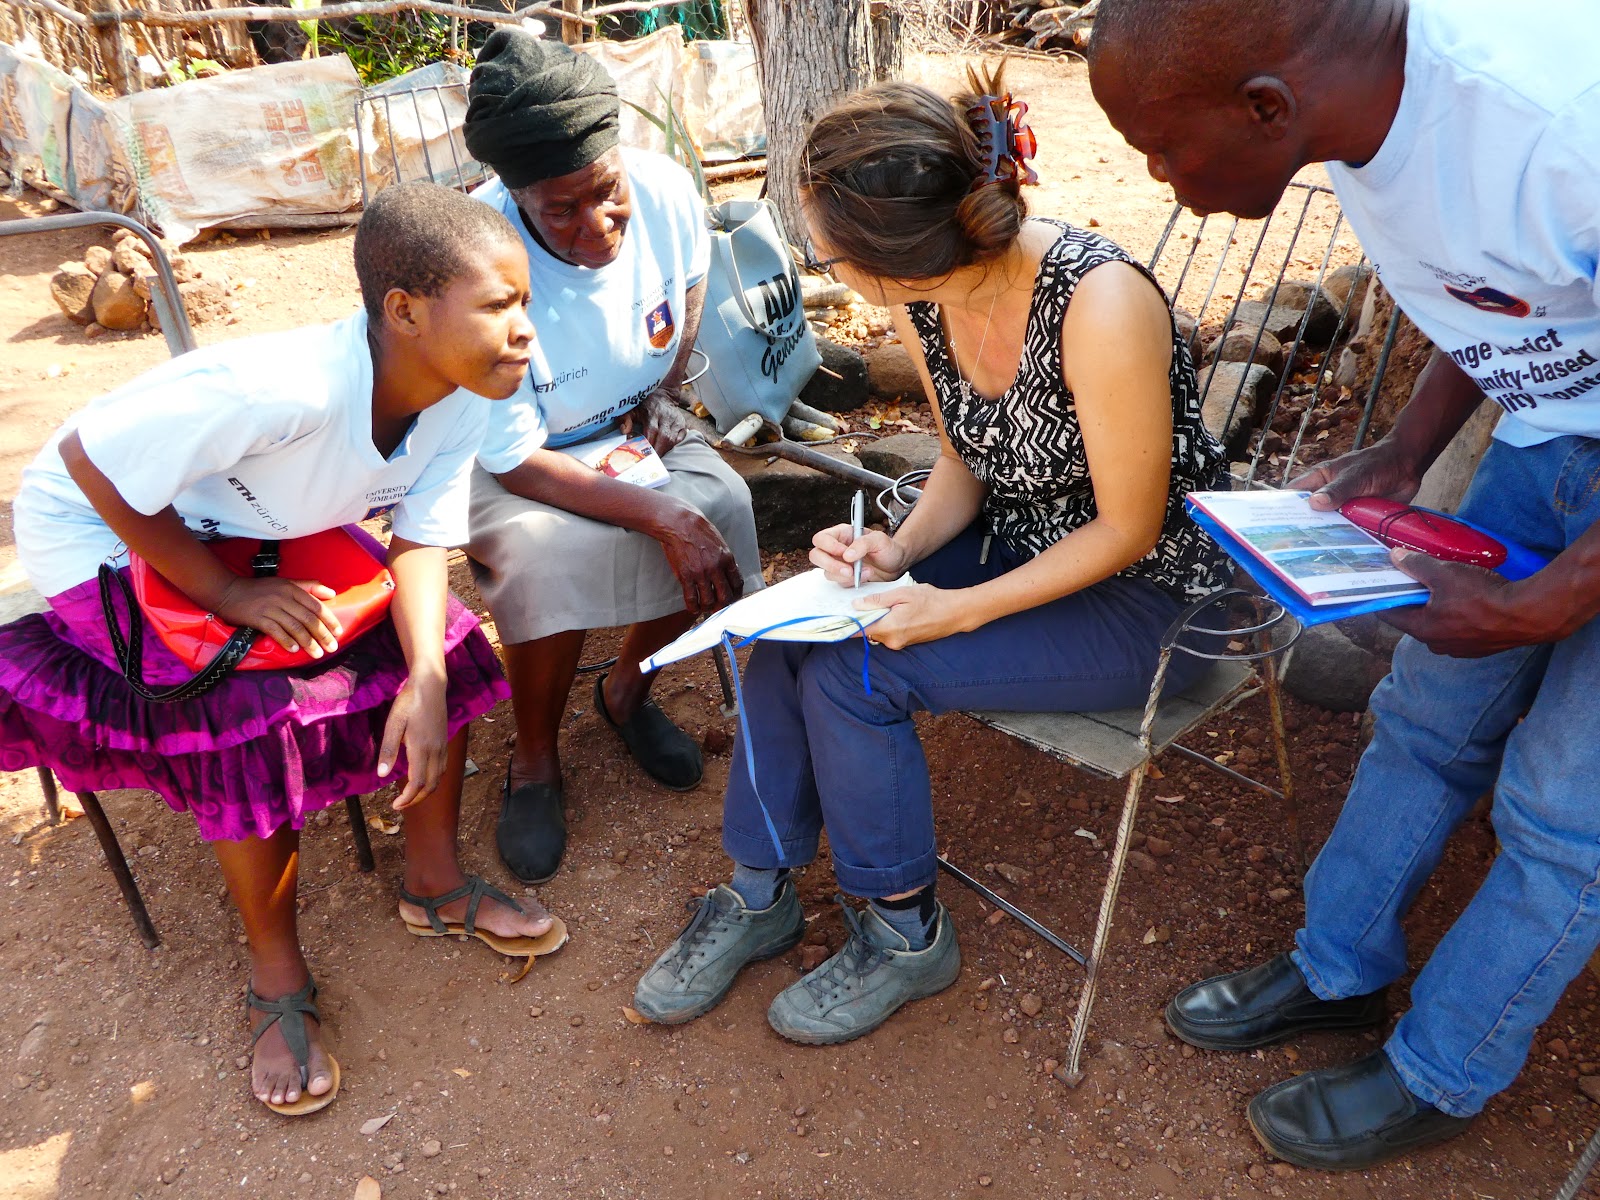 Swiss scientist in exchange with local volunteers in Zimbabwe.